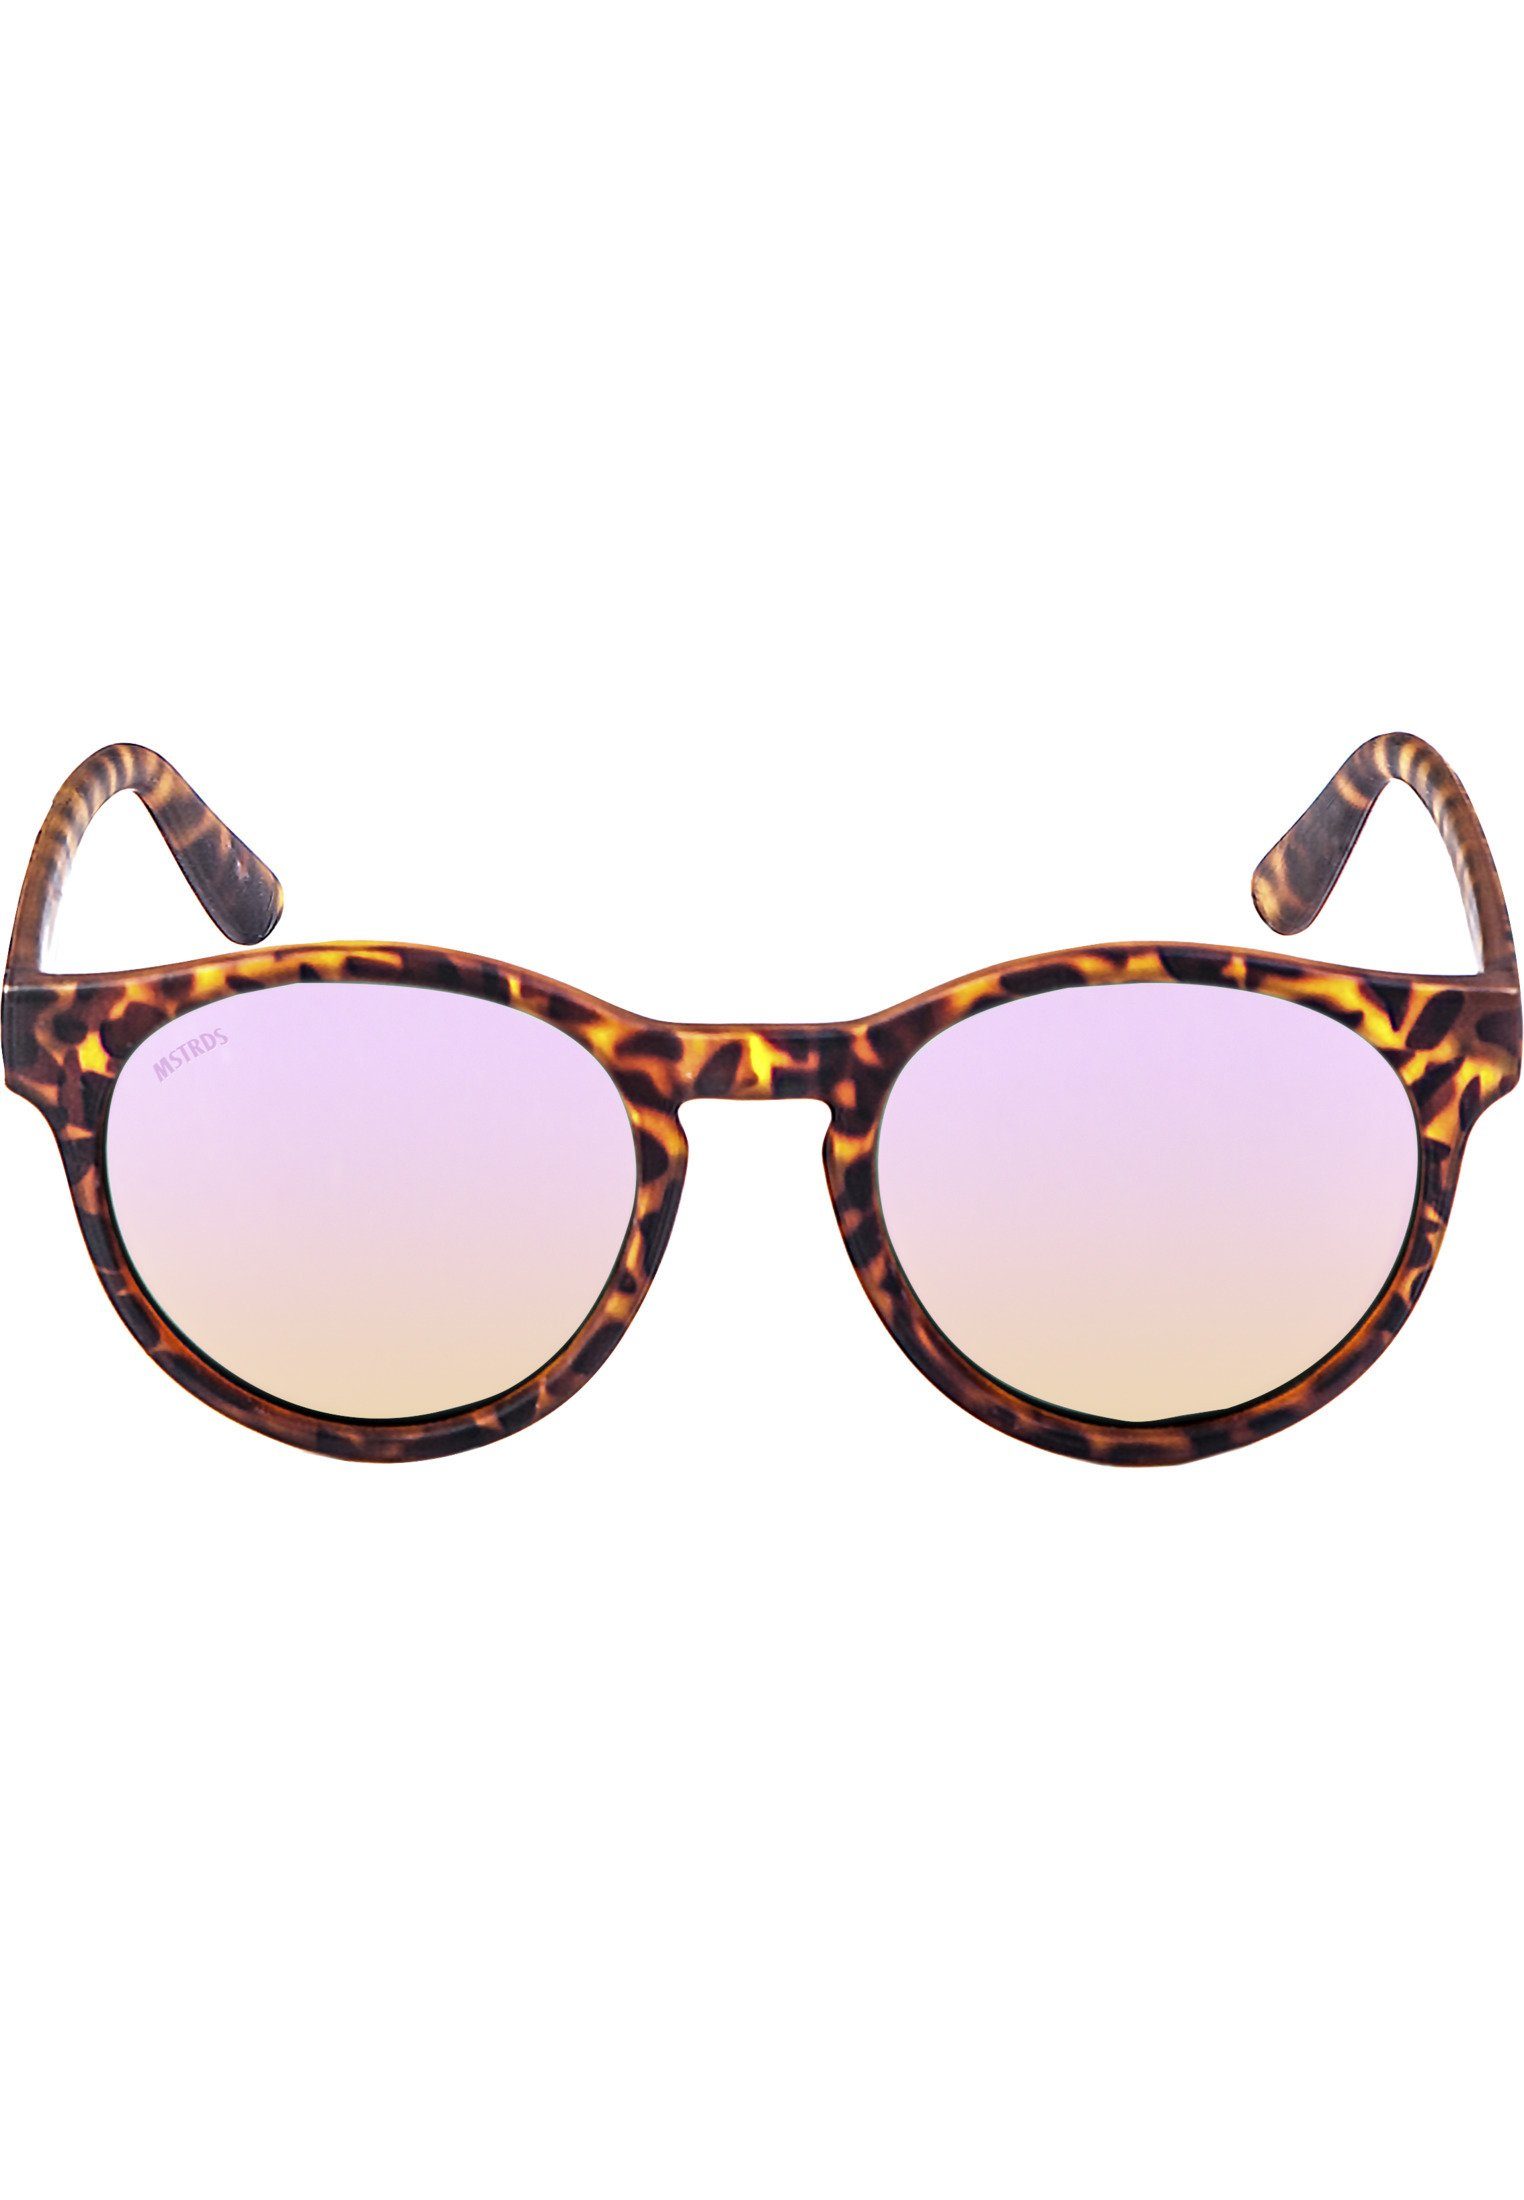 Sunglasses Sonnenbrille Sunrise Accessoires MSTRDS havanna/rosé